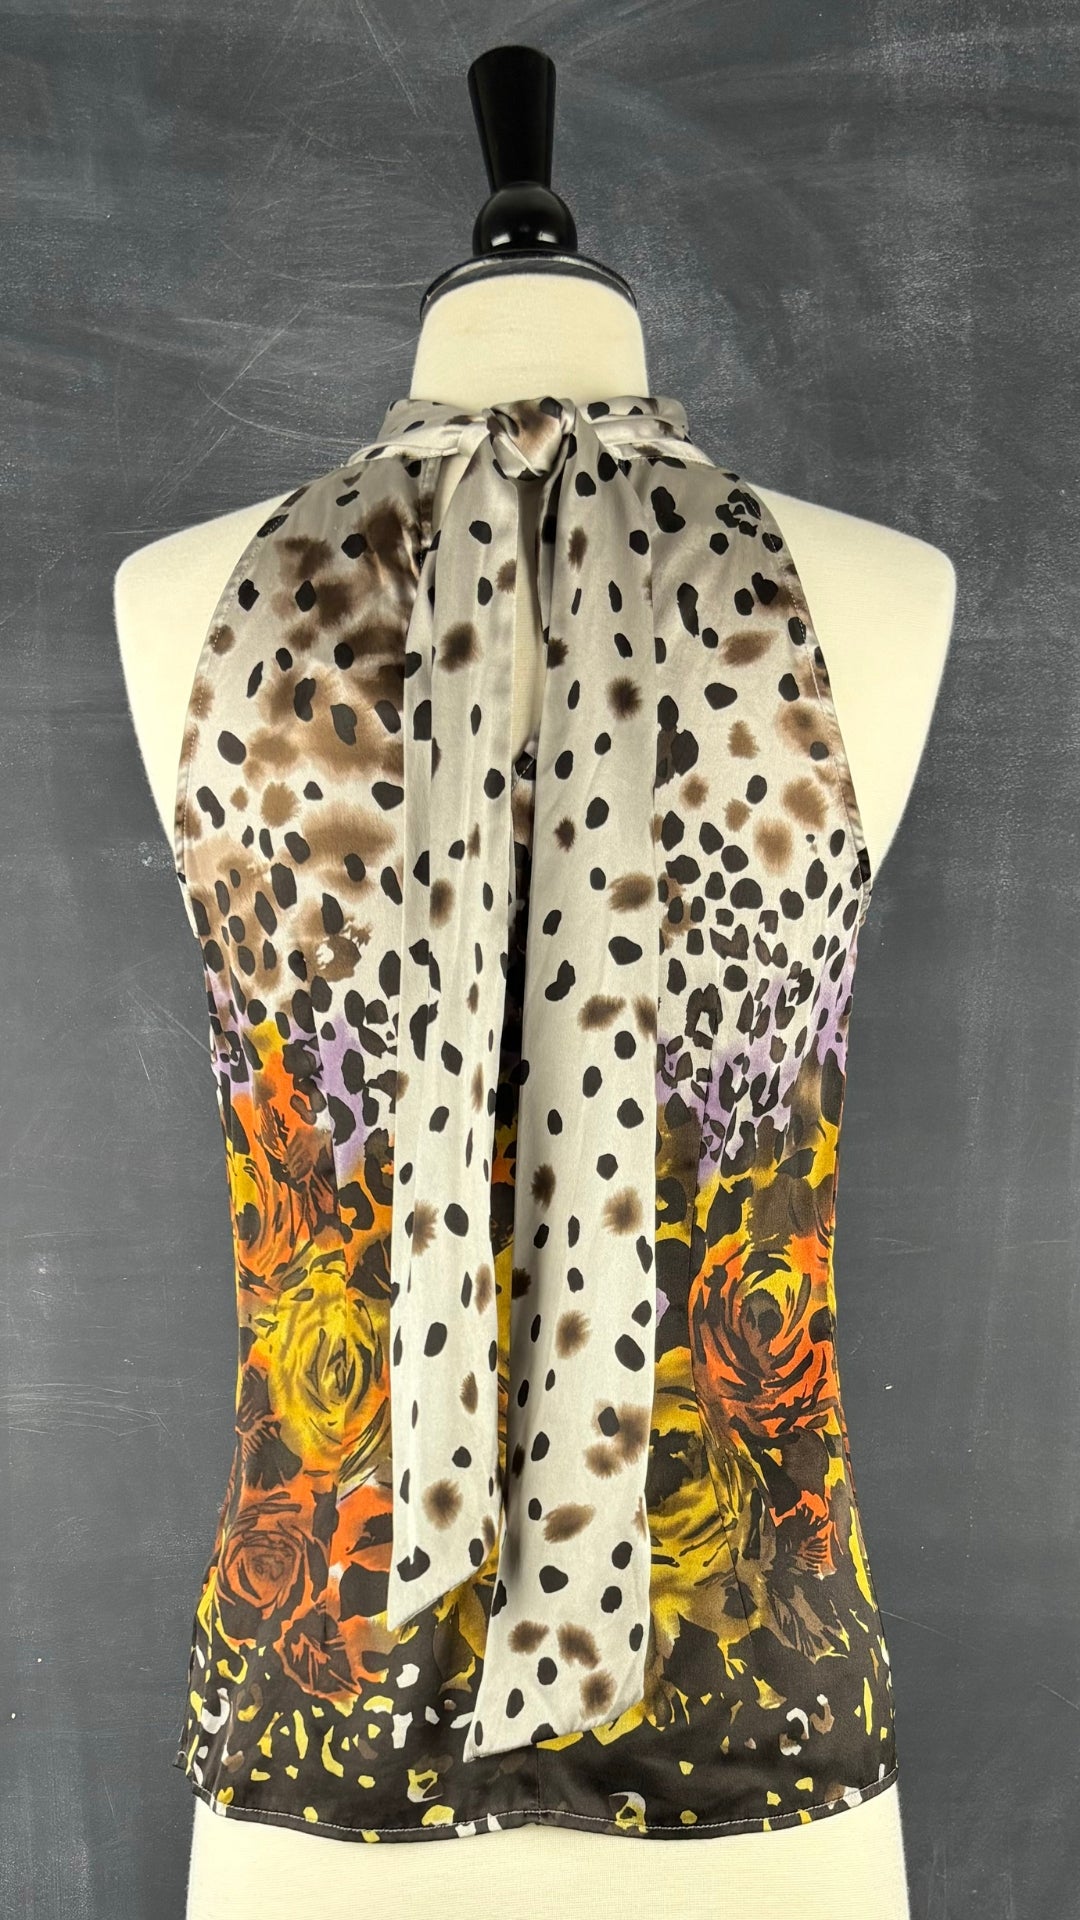 Camisole en soie florale et léopard Guess by Marciano, taille xs. Vue de dos.